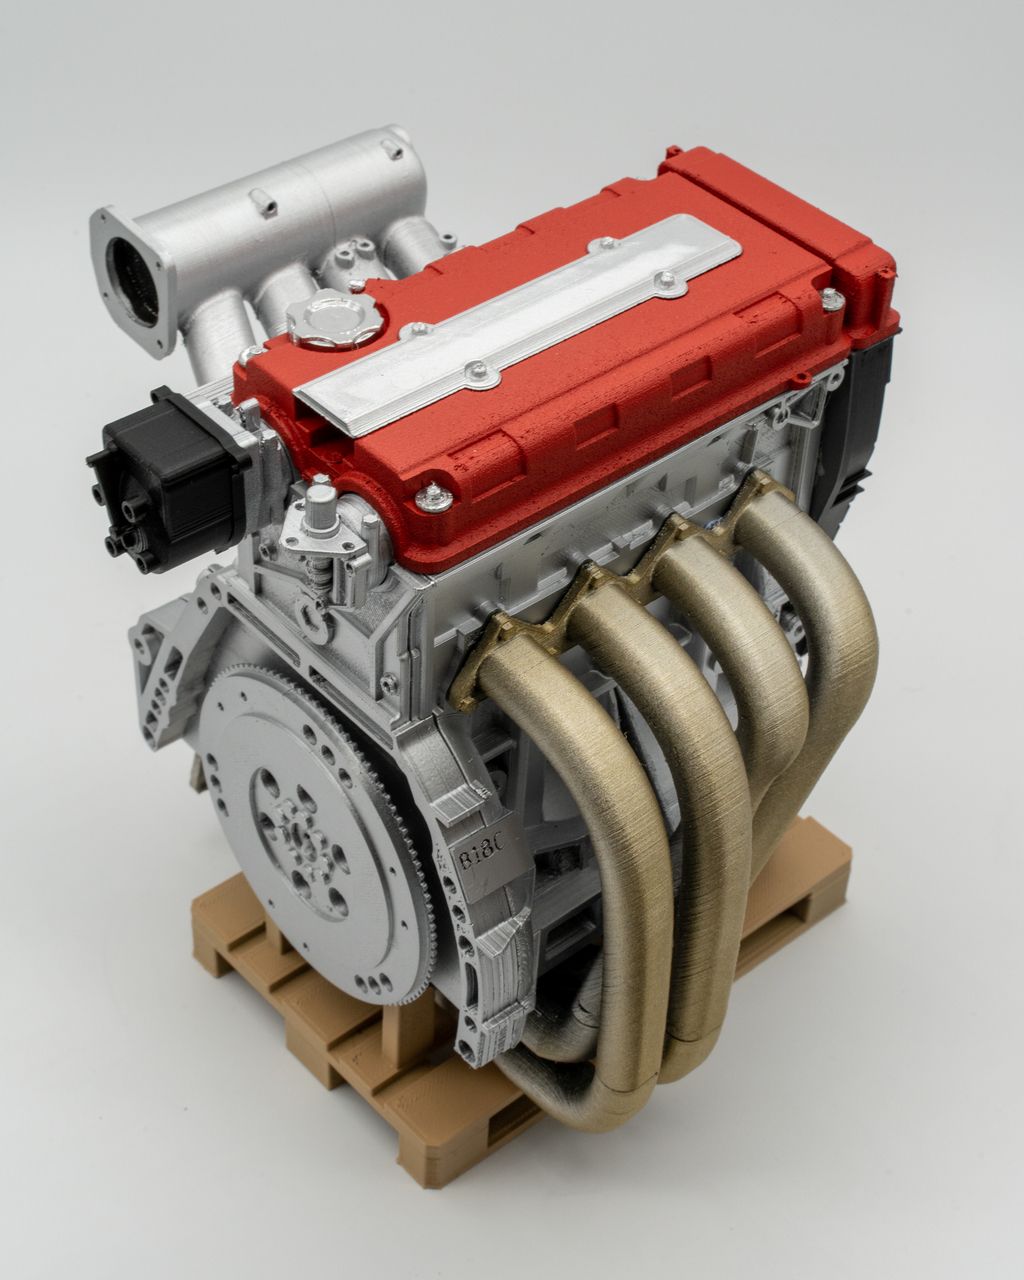 1/4 B-Series (B16/B18) Scale Engine - DIY Kit – dbsworks